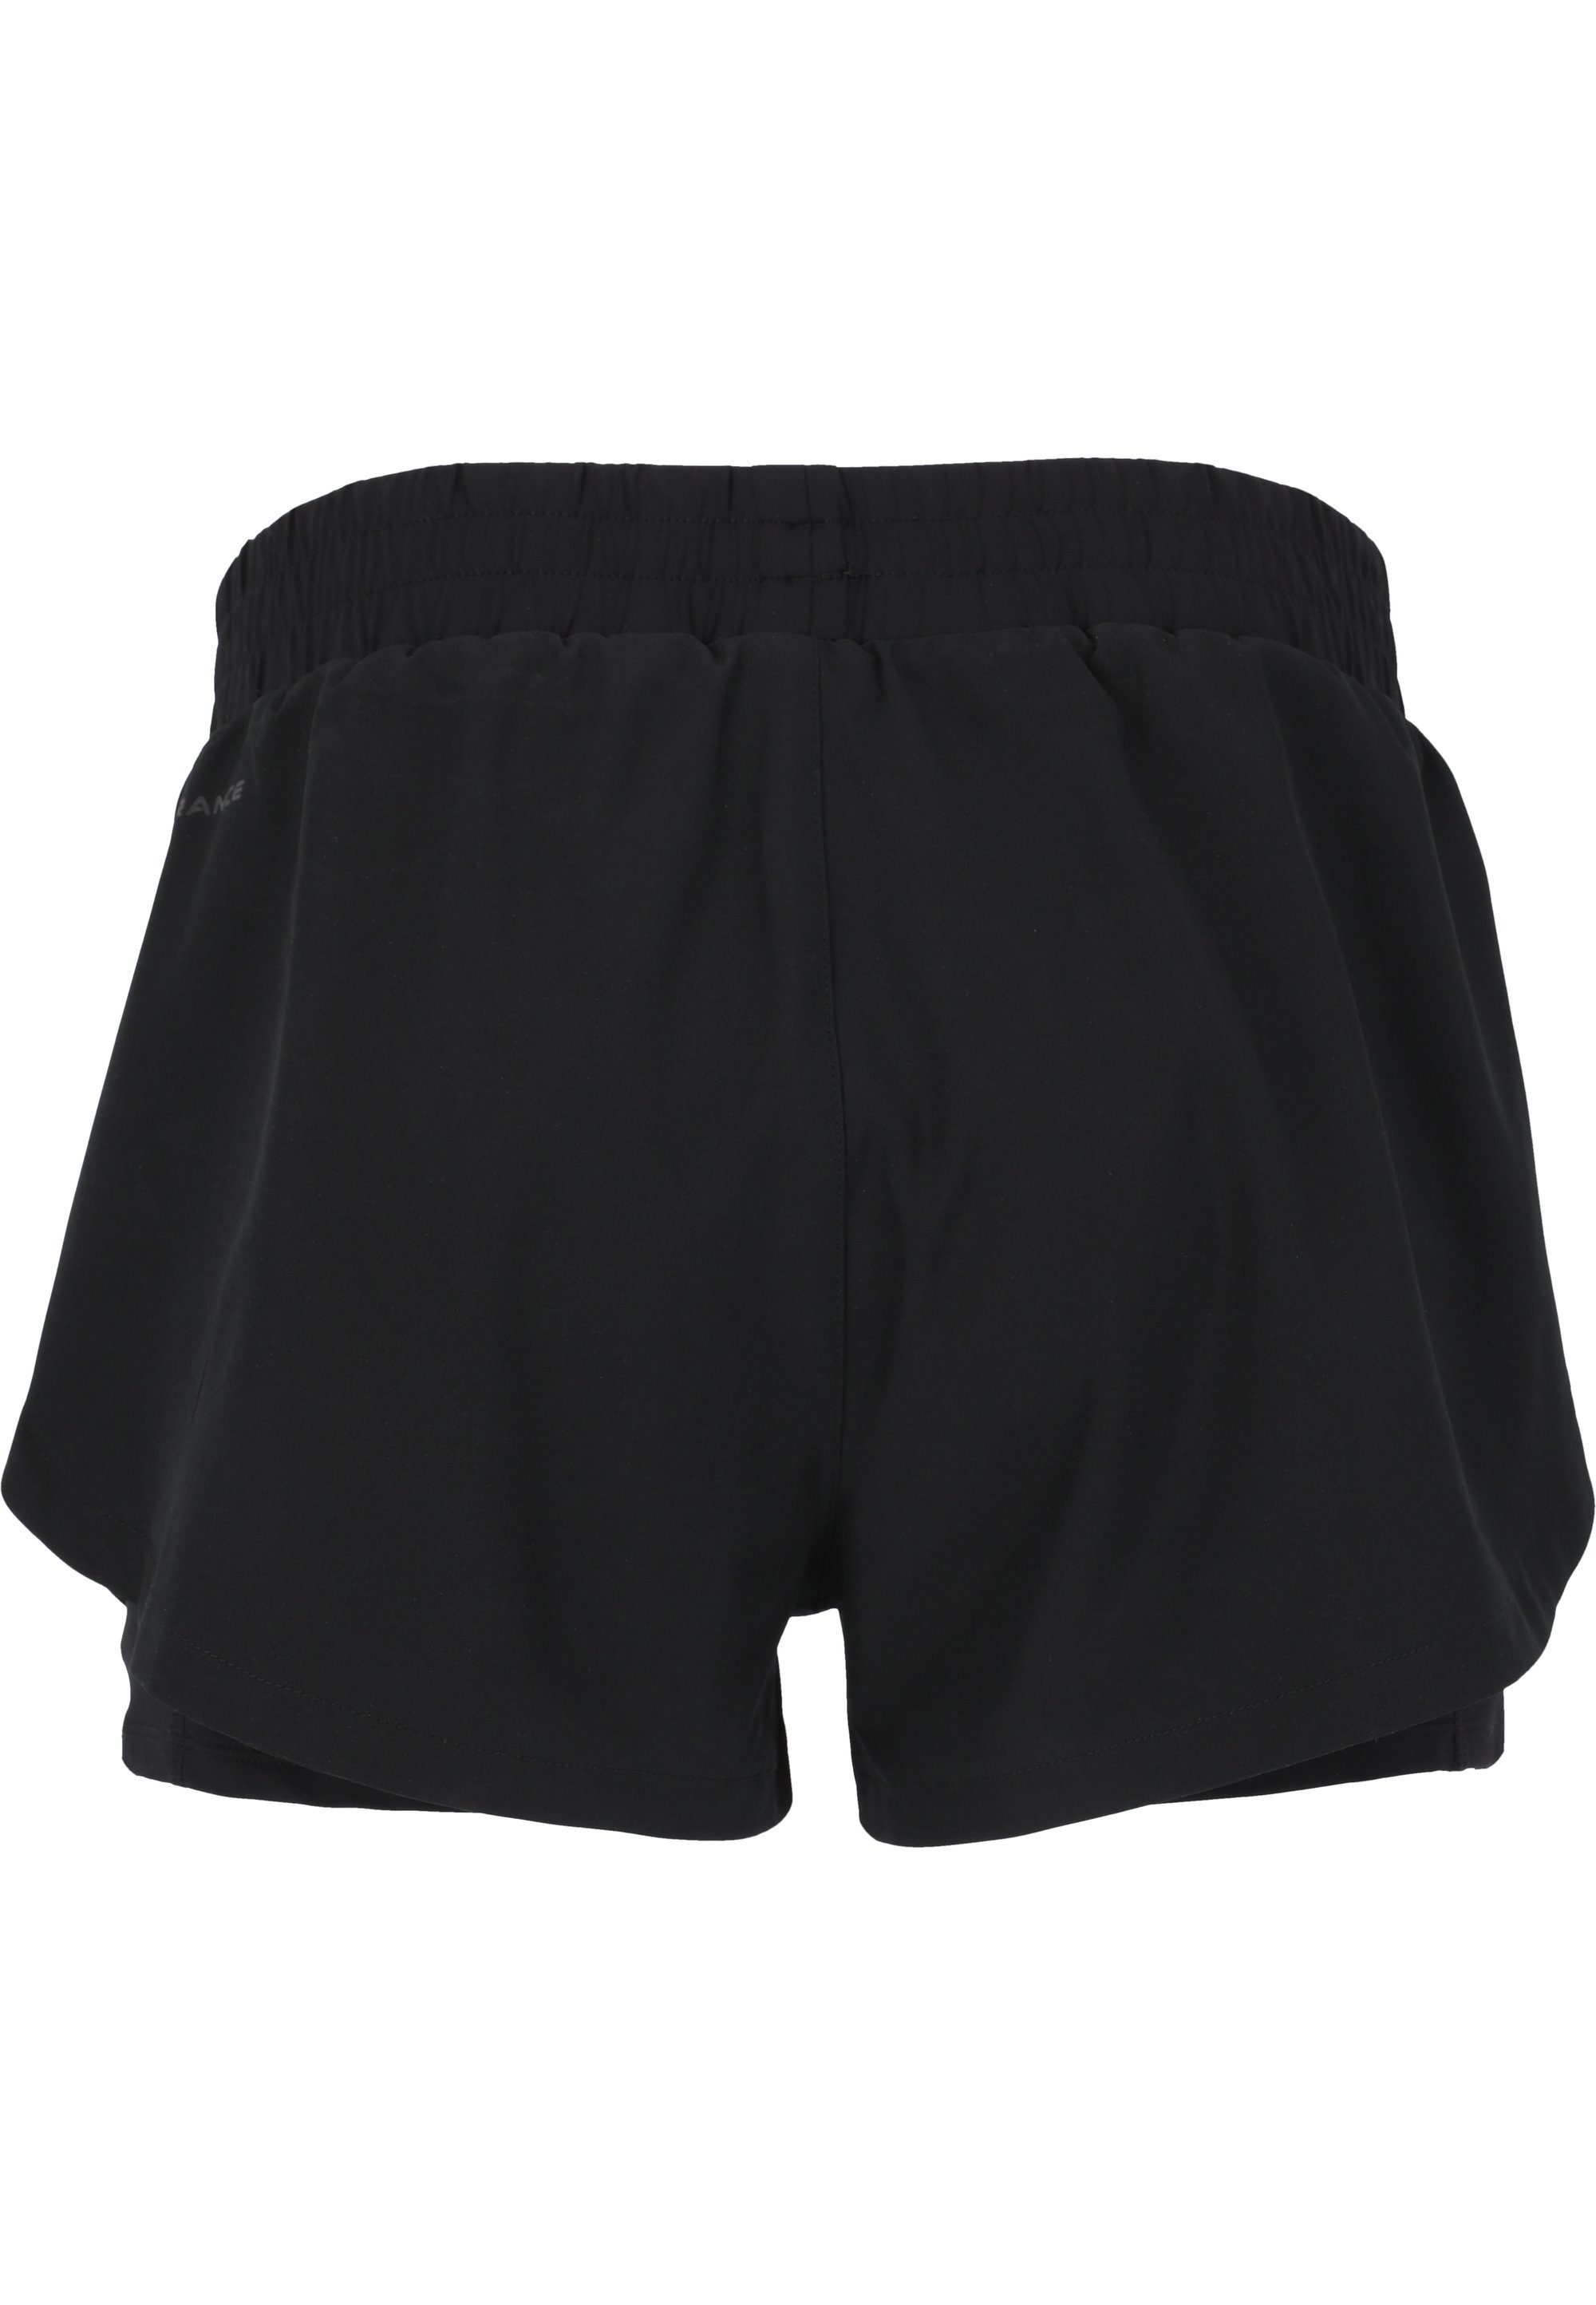 praktischer Yarol ENDURANCE mit schwarz 2-in-1-Funktion Shorts